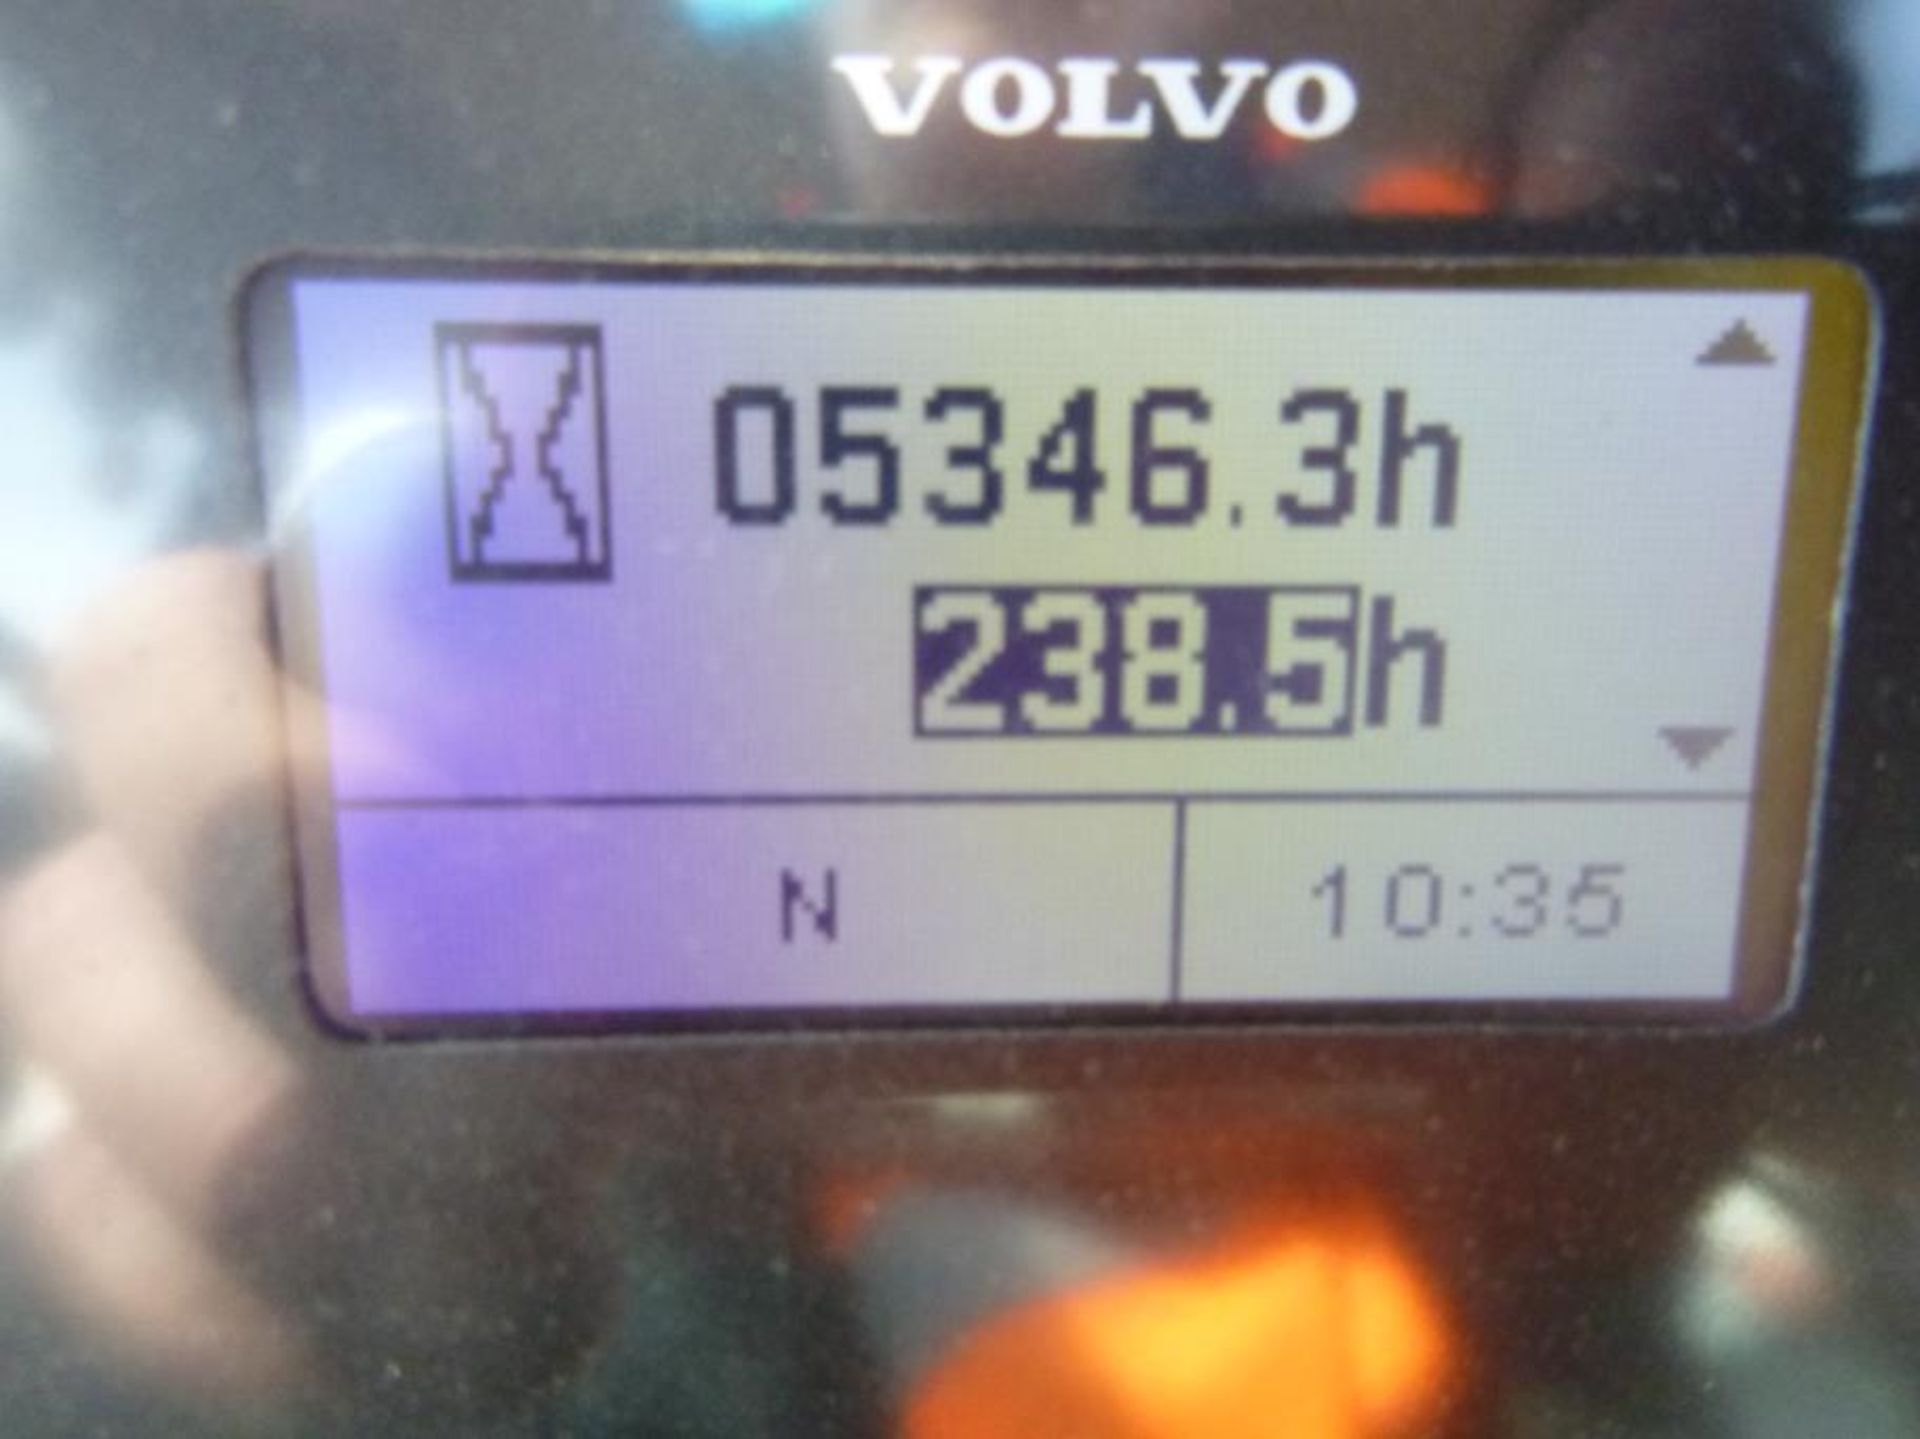 2012 Volvo BL71B Backhoe Loader - Image 21 of 24